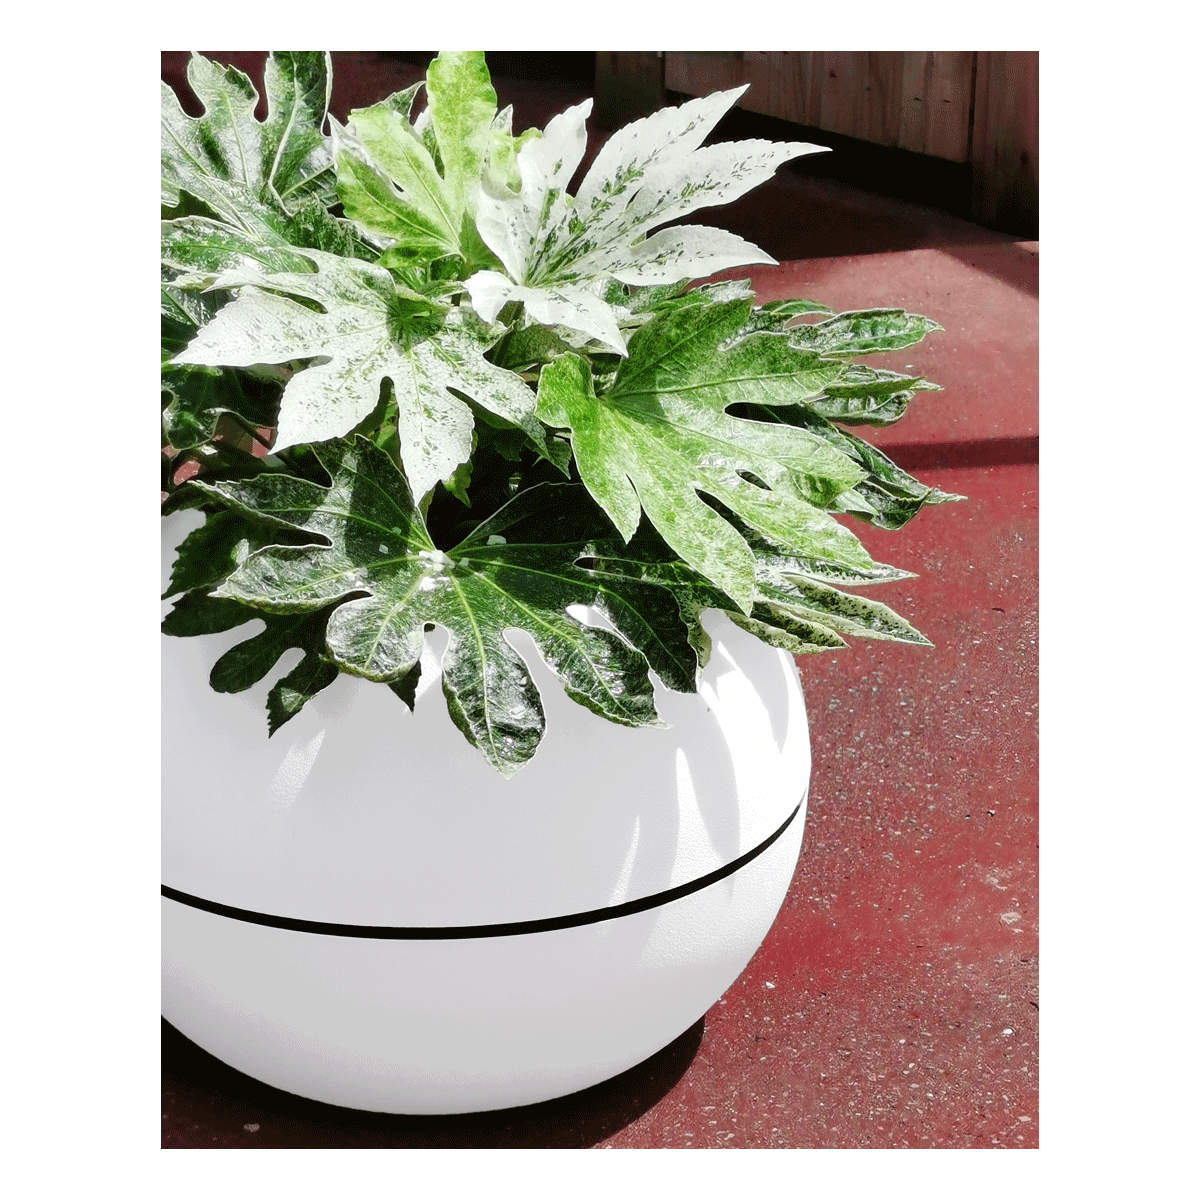 Pot de fleurs en plastique : les astuces et idées pour le décorer